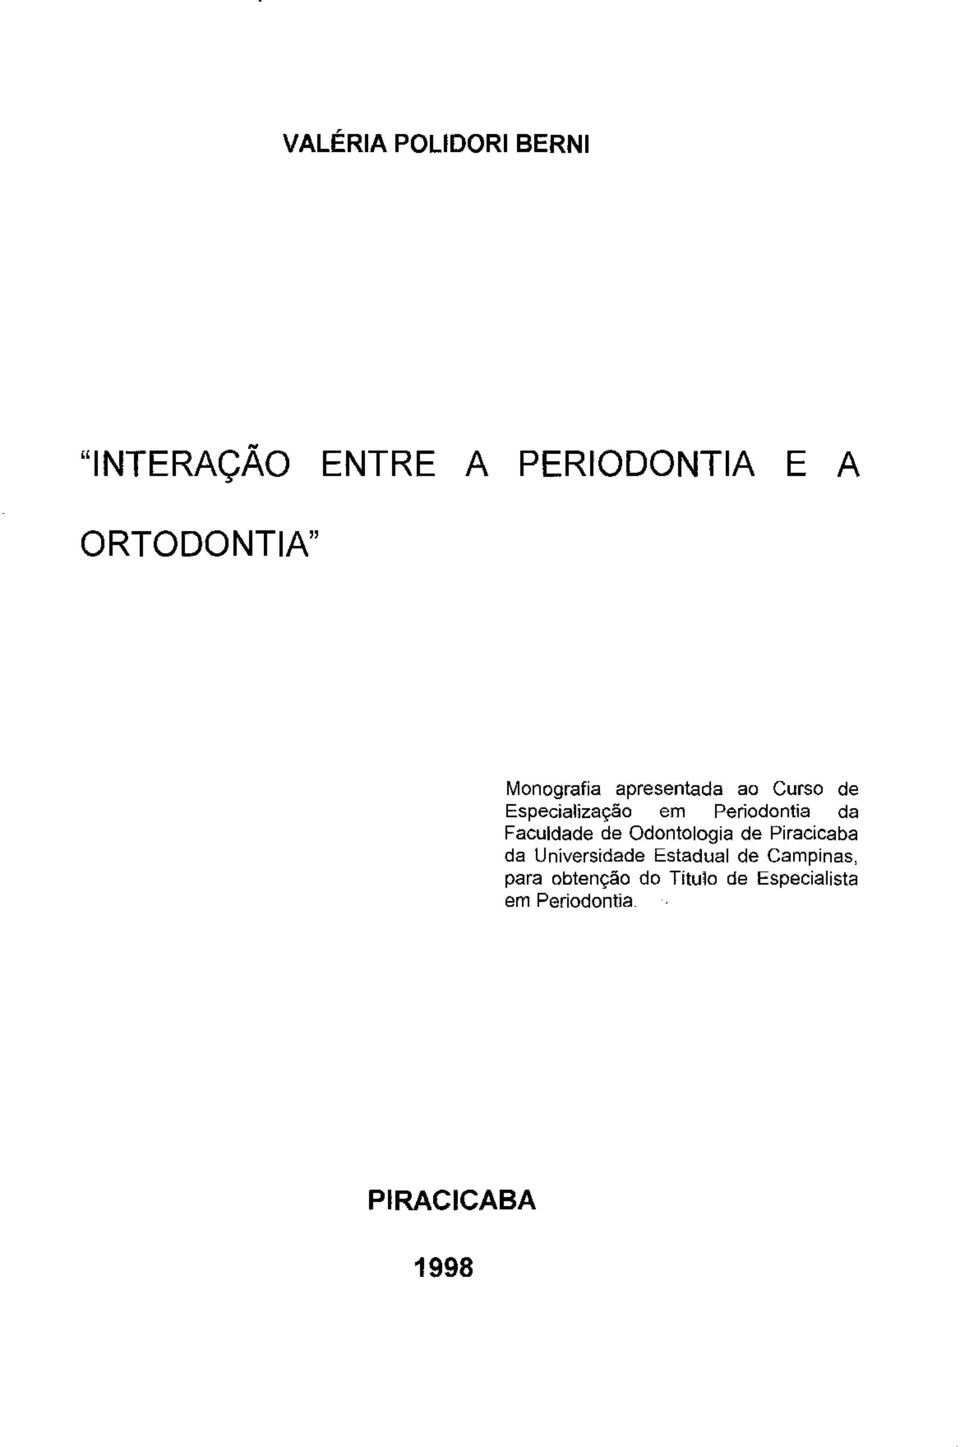 Faculdade de Odontologia de Piracicaba da Universidade Estadual de